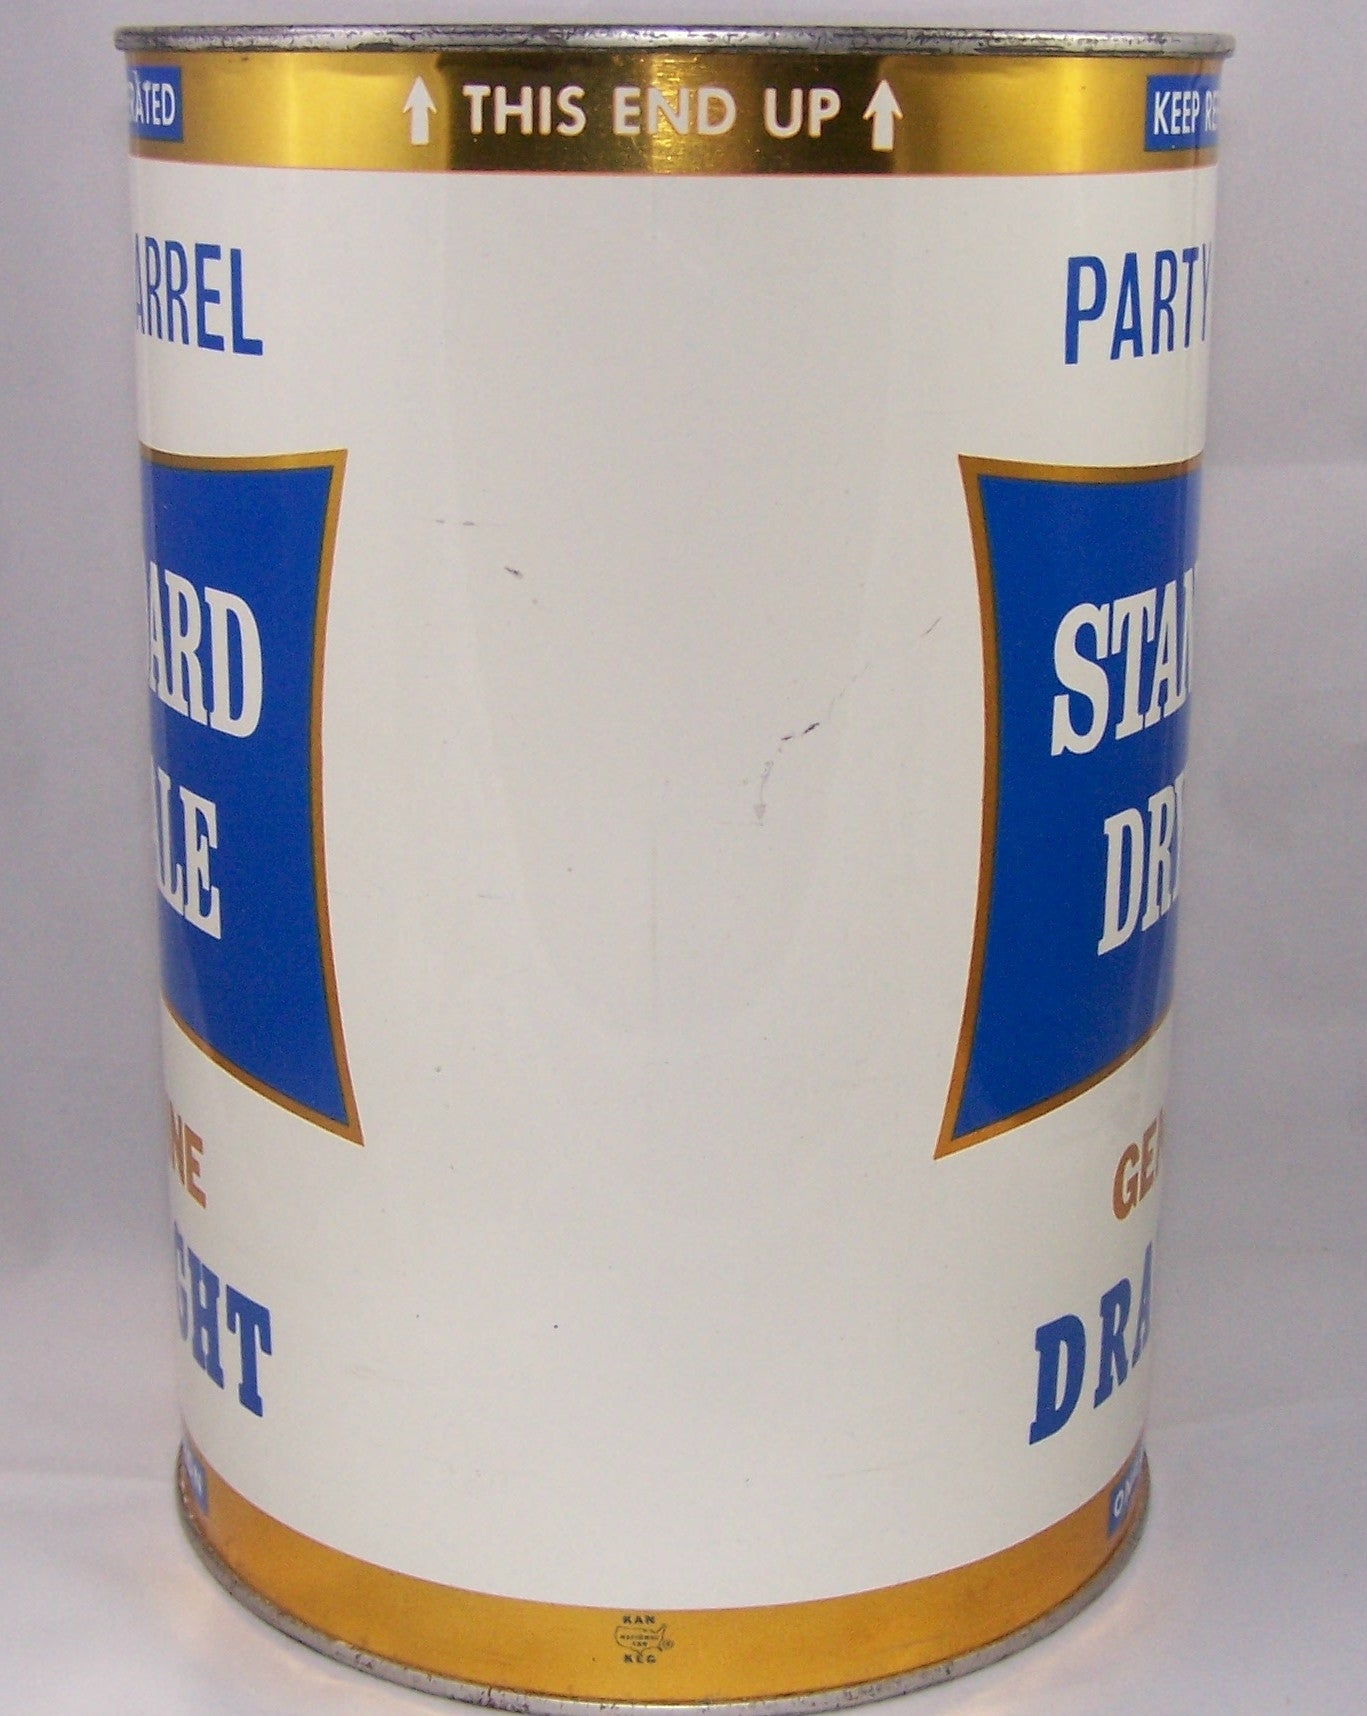 Standard Dry Ale Party Barrel, USBC 246-7, Grade A1+